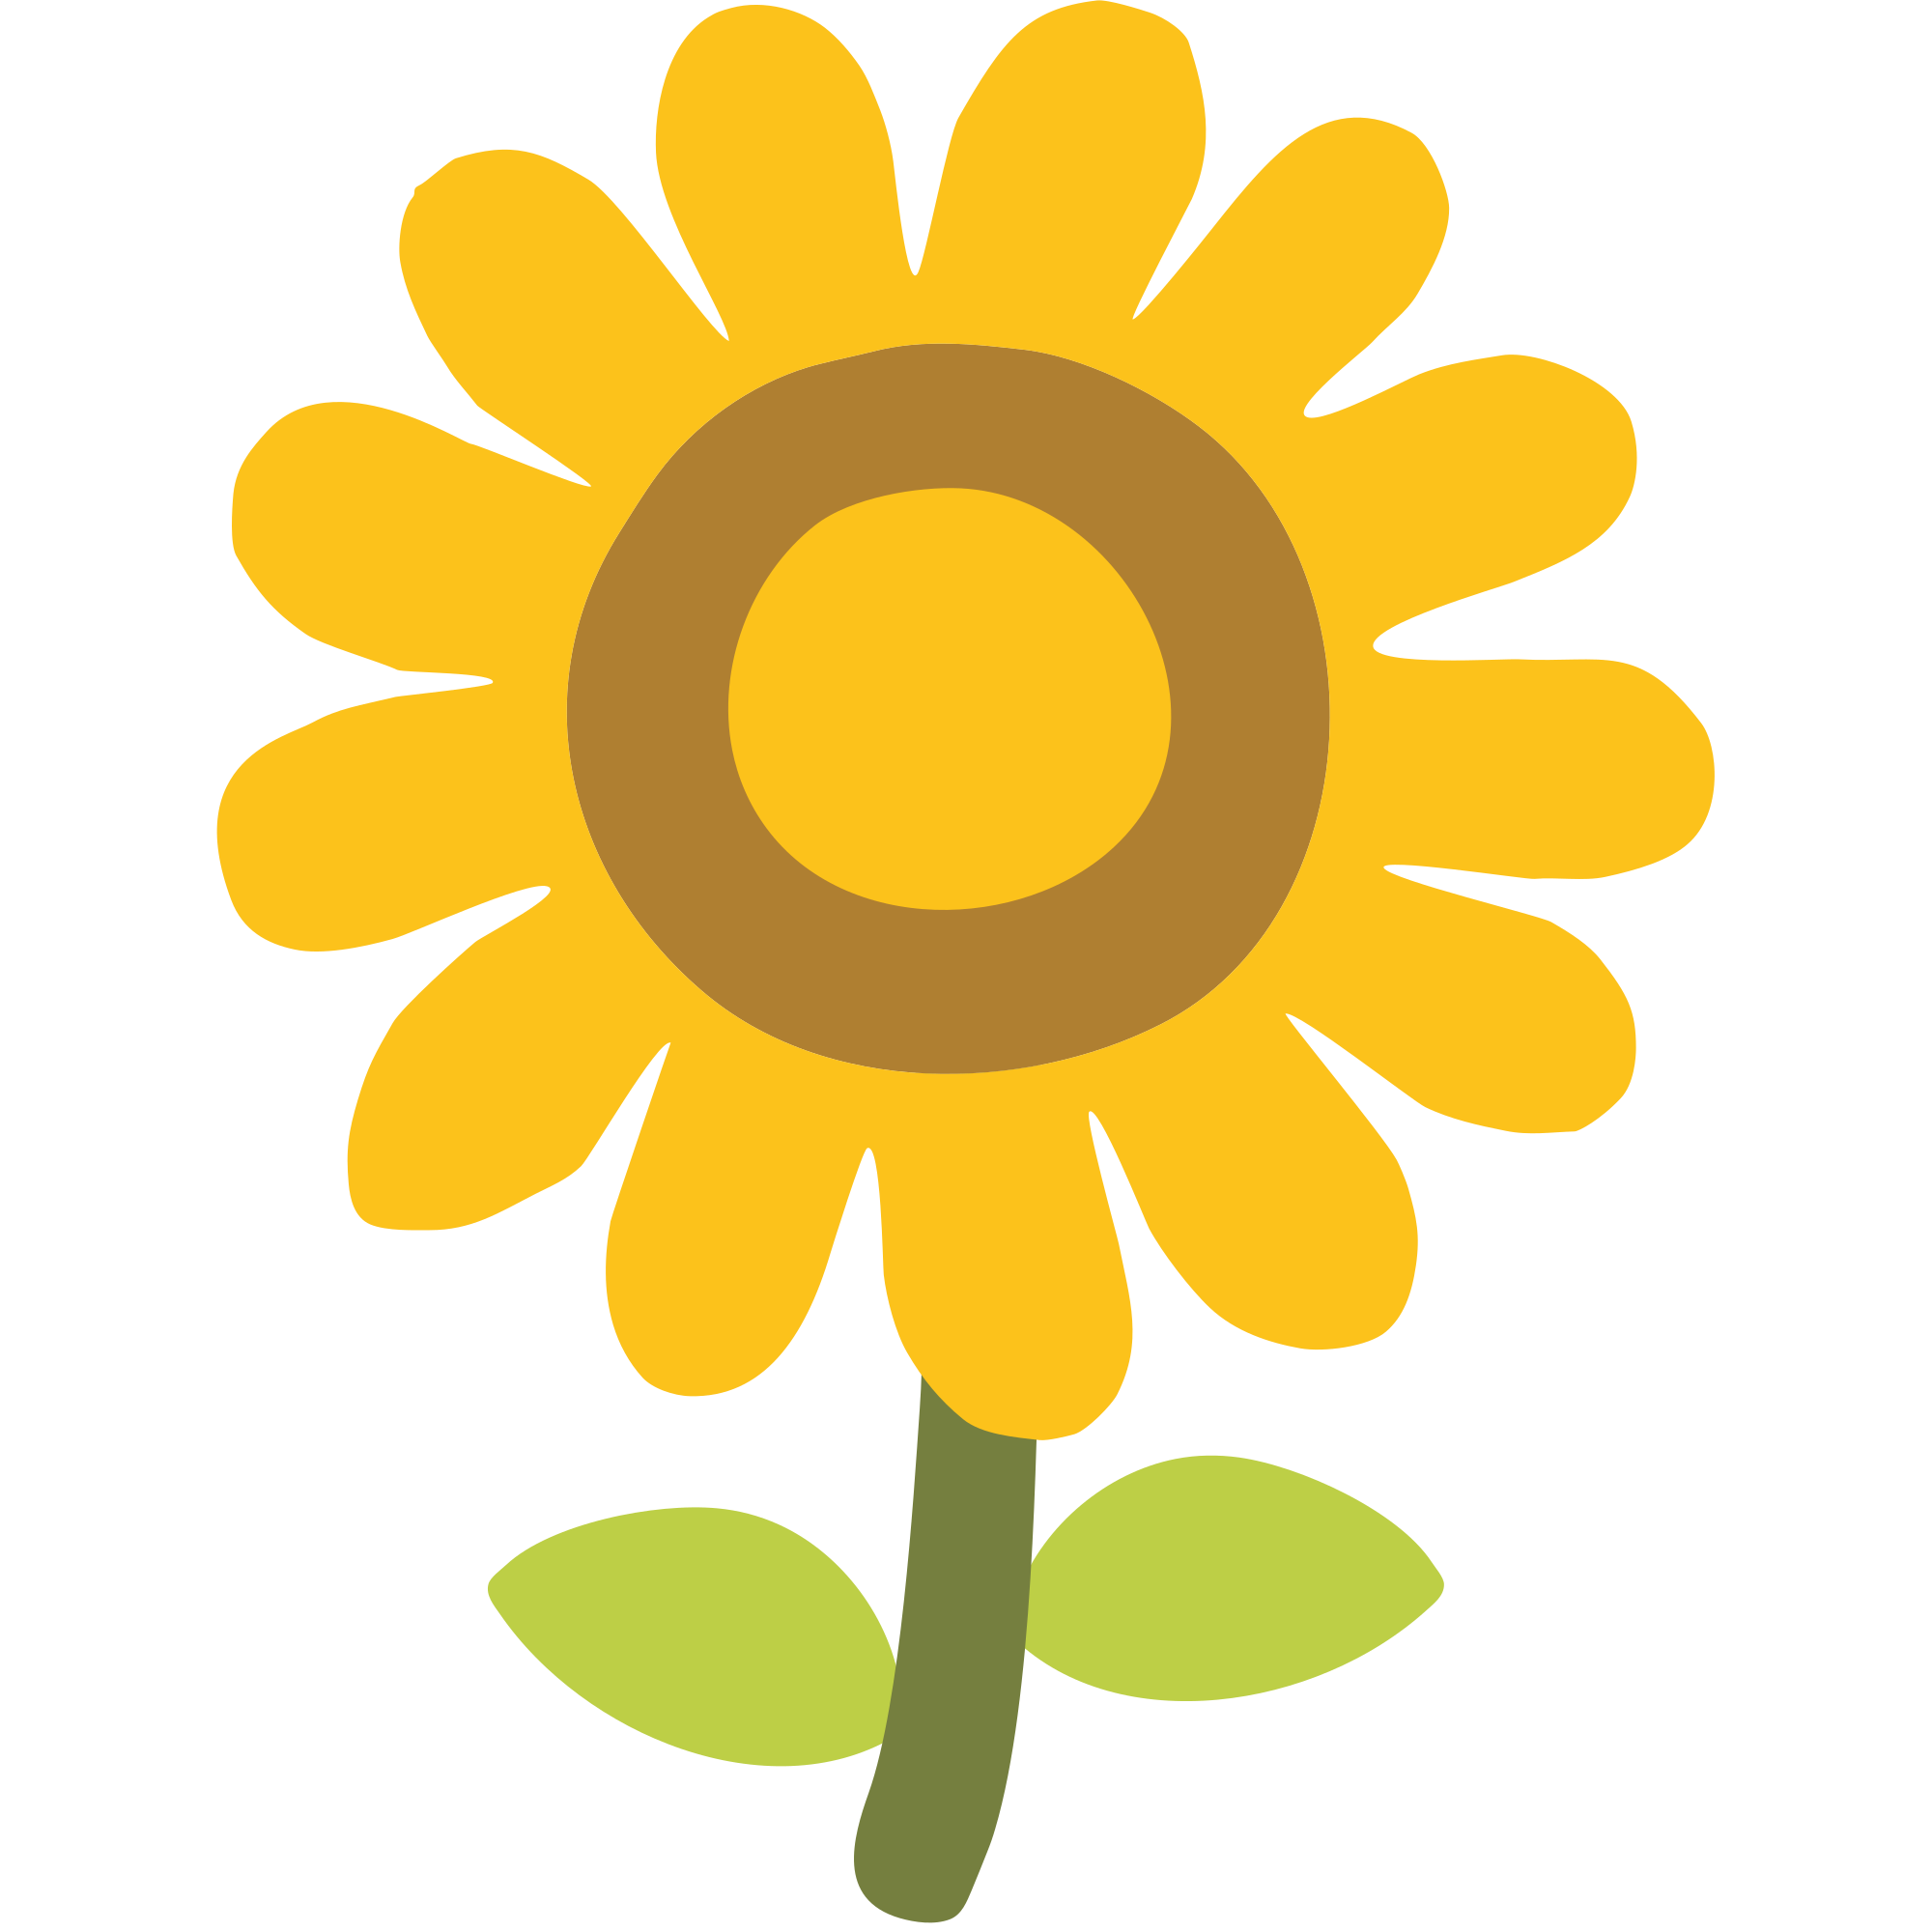 Download Emoji clipart sunflower, Emoji sunflower Transparent FREE ...